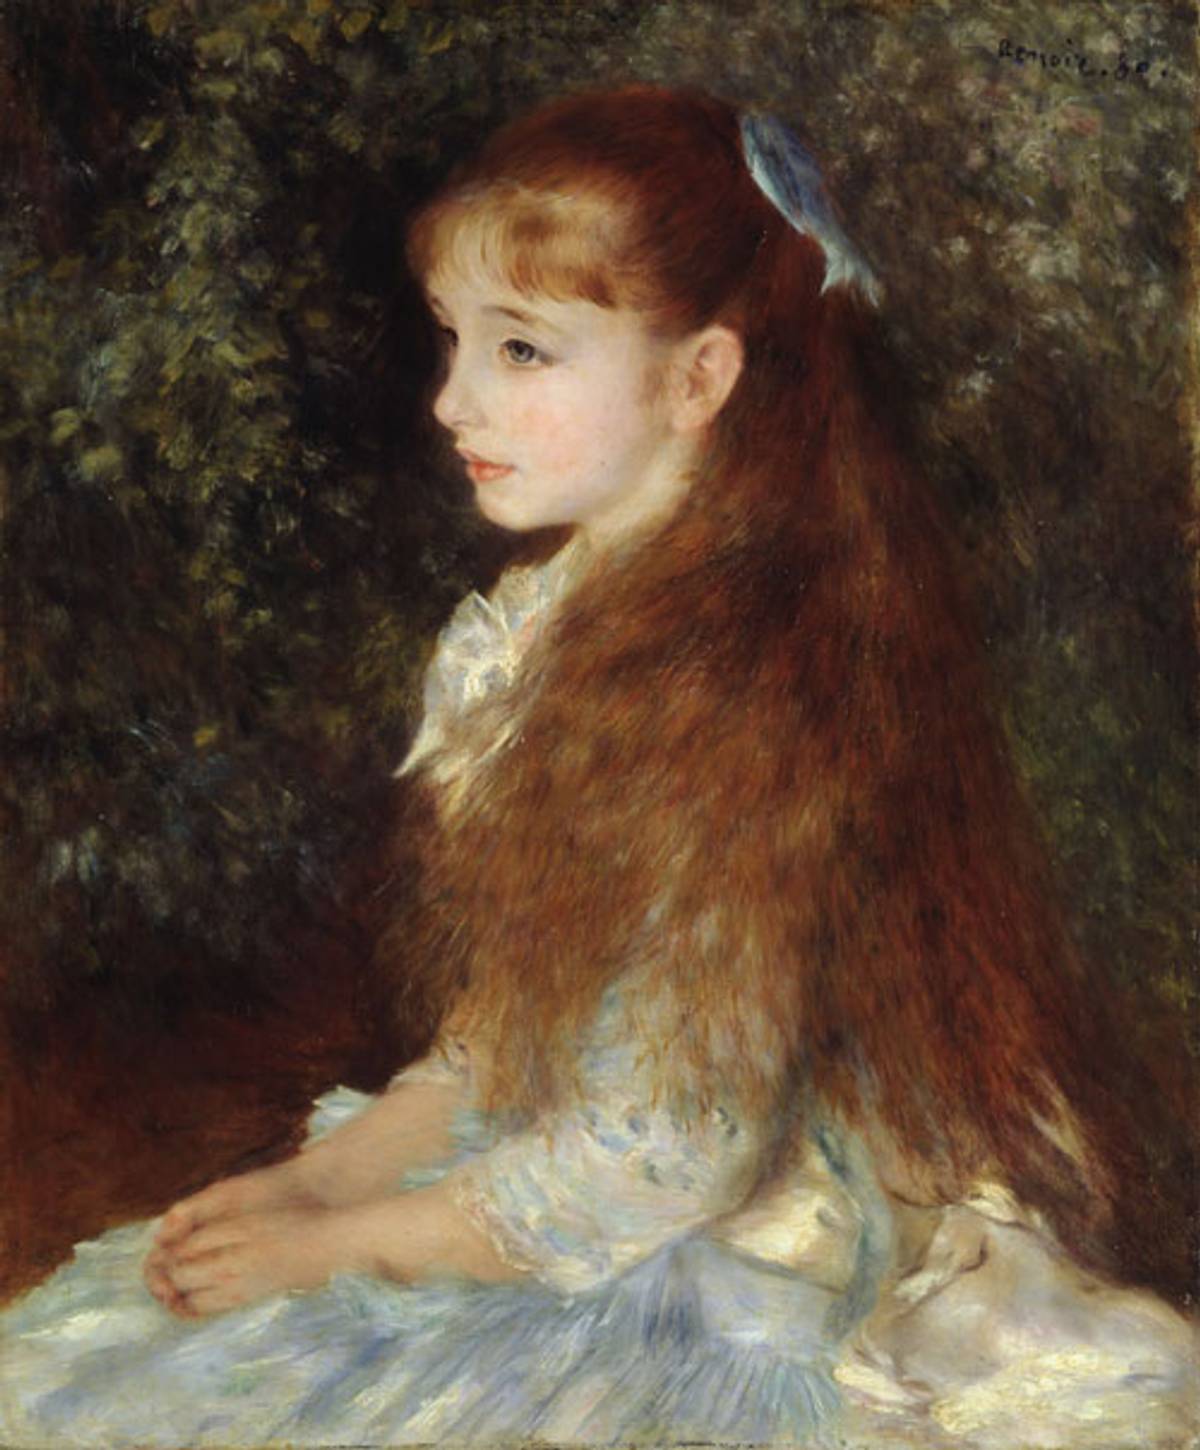 Pierre-Auguste Renoir, Portrait of Mademoiselle Irène Cahen d’Anvers, 1880. (E.G. Bührle Collection)